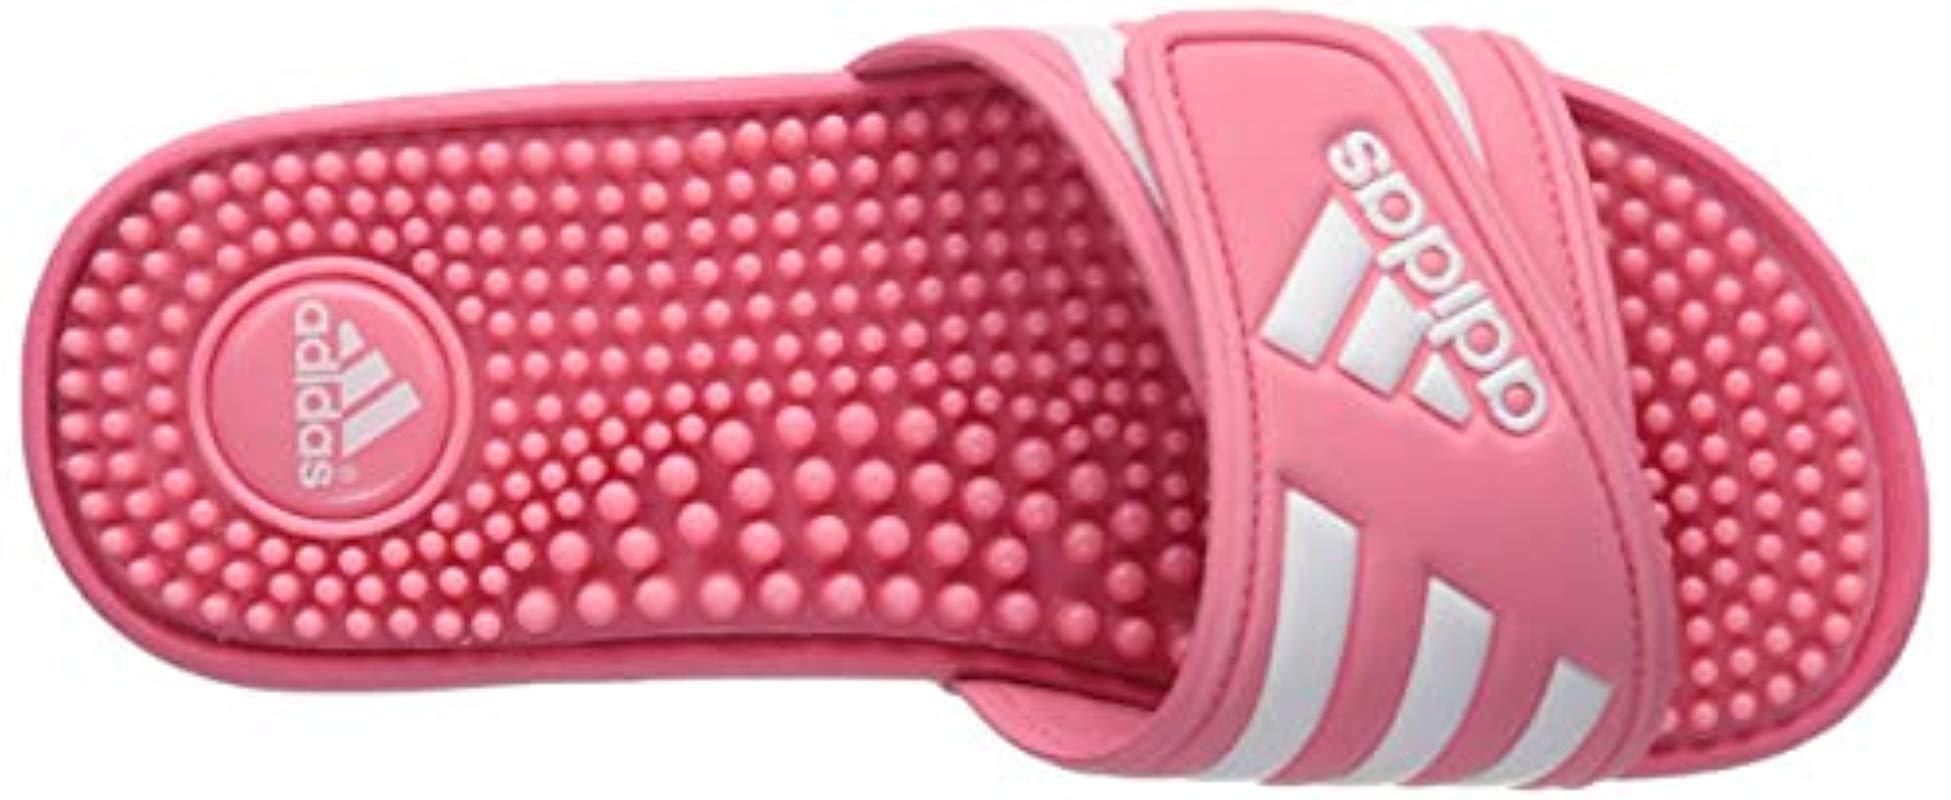 adidas Adissage Slide in Chalk Pink/White/Chalk Pink (Pink) - Lyst